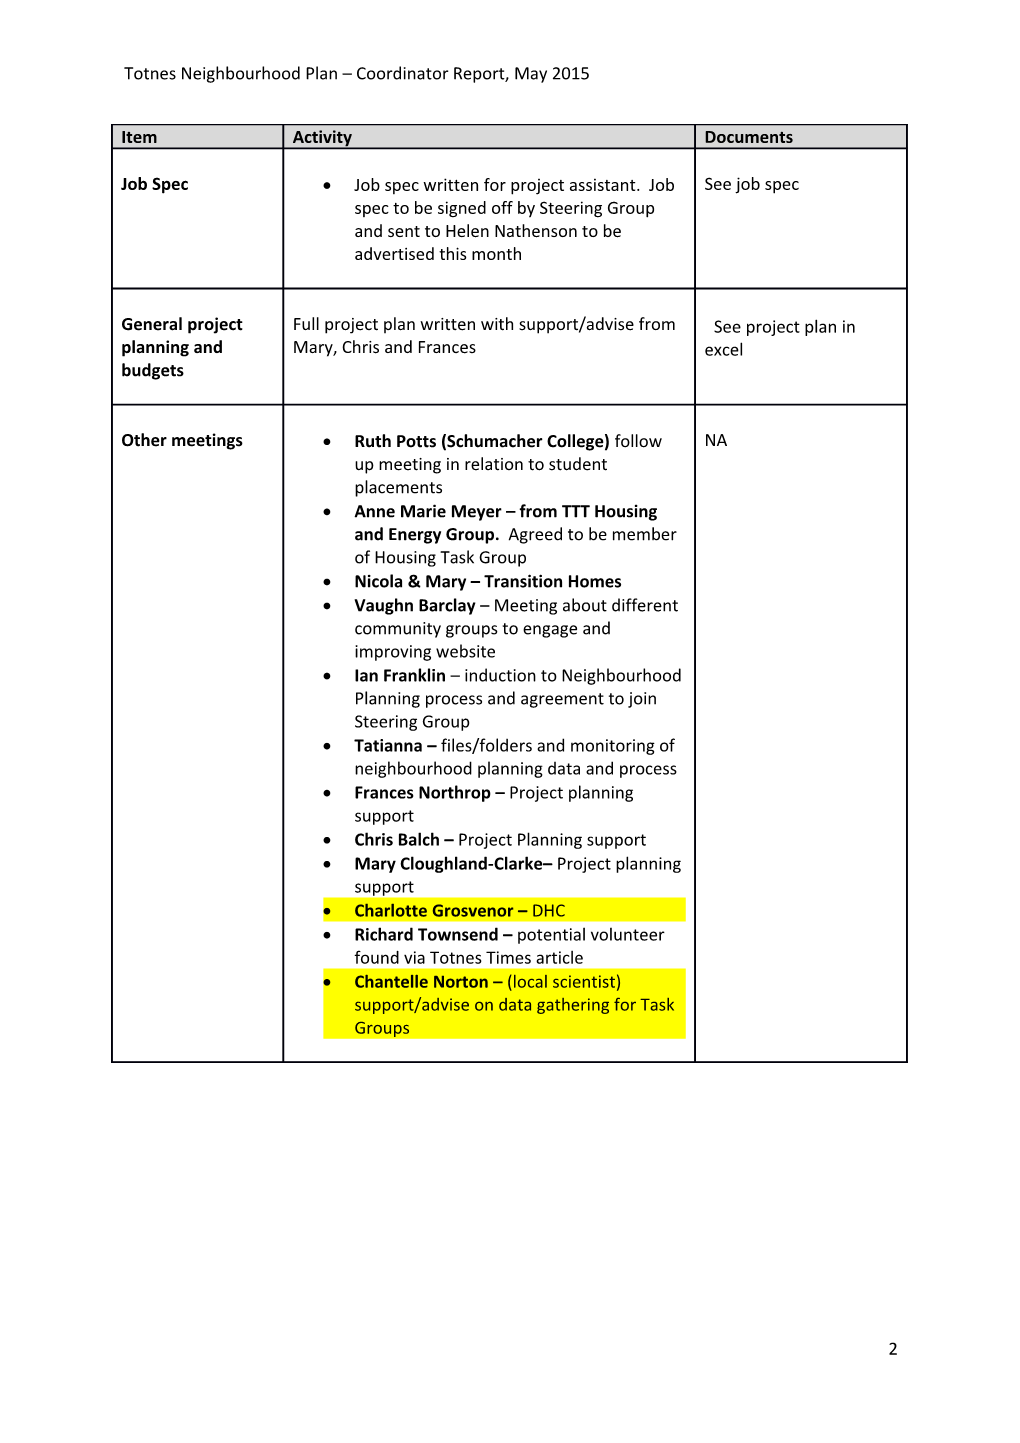 Totnes Neighbourhood Plan Coordinator Report, May 2015